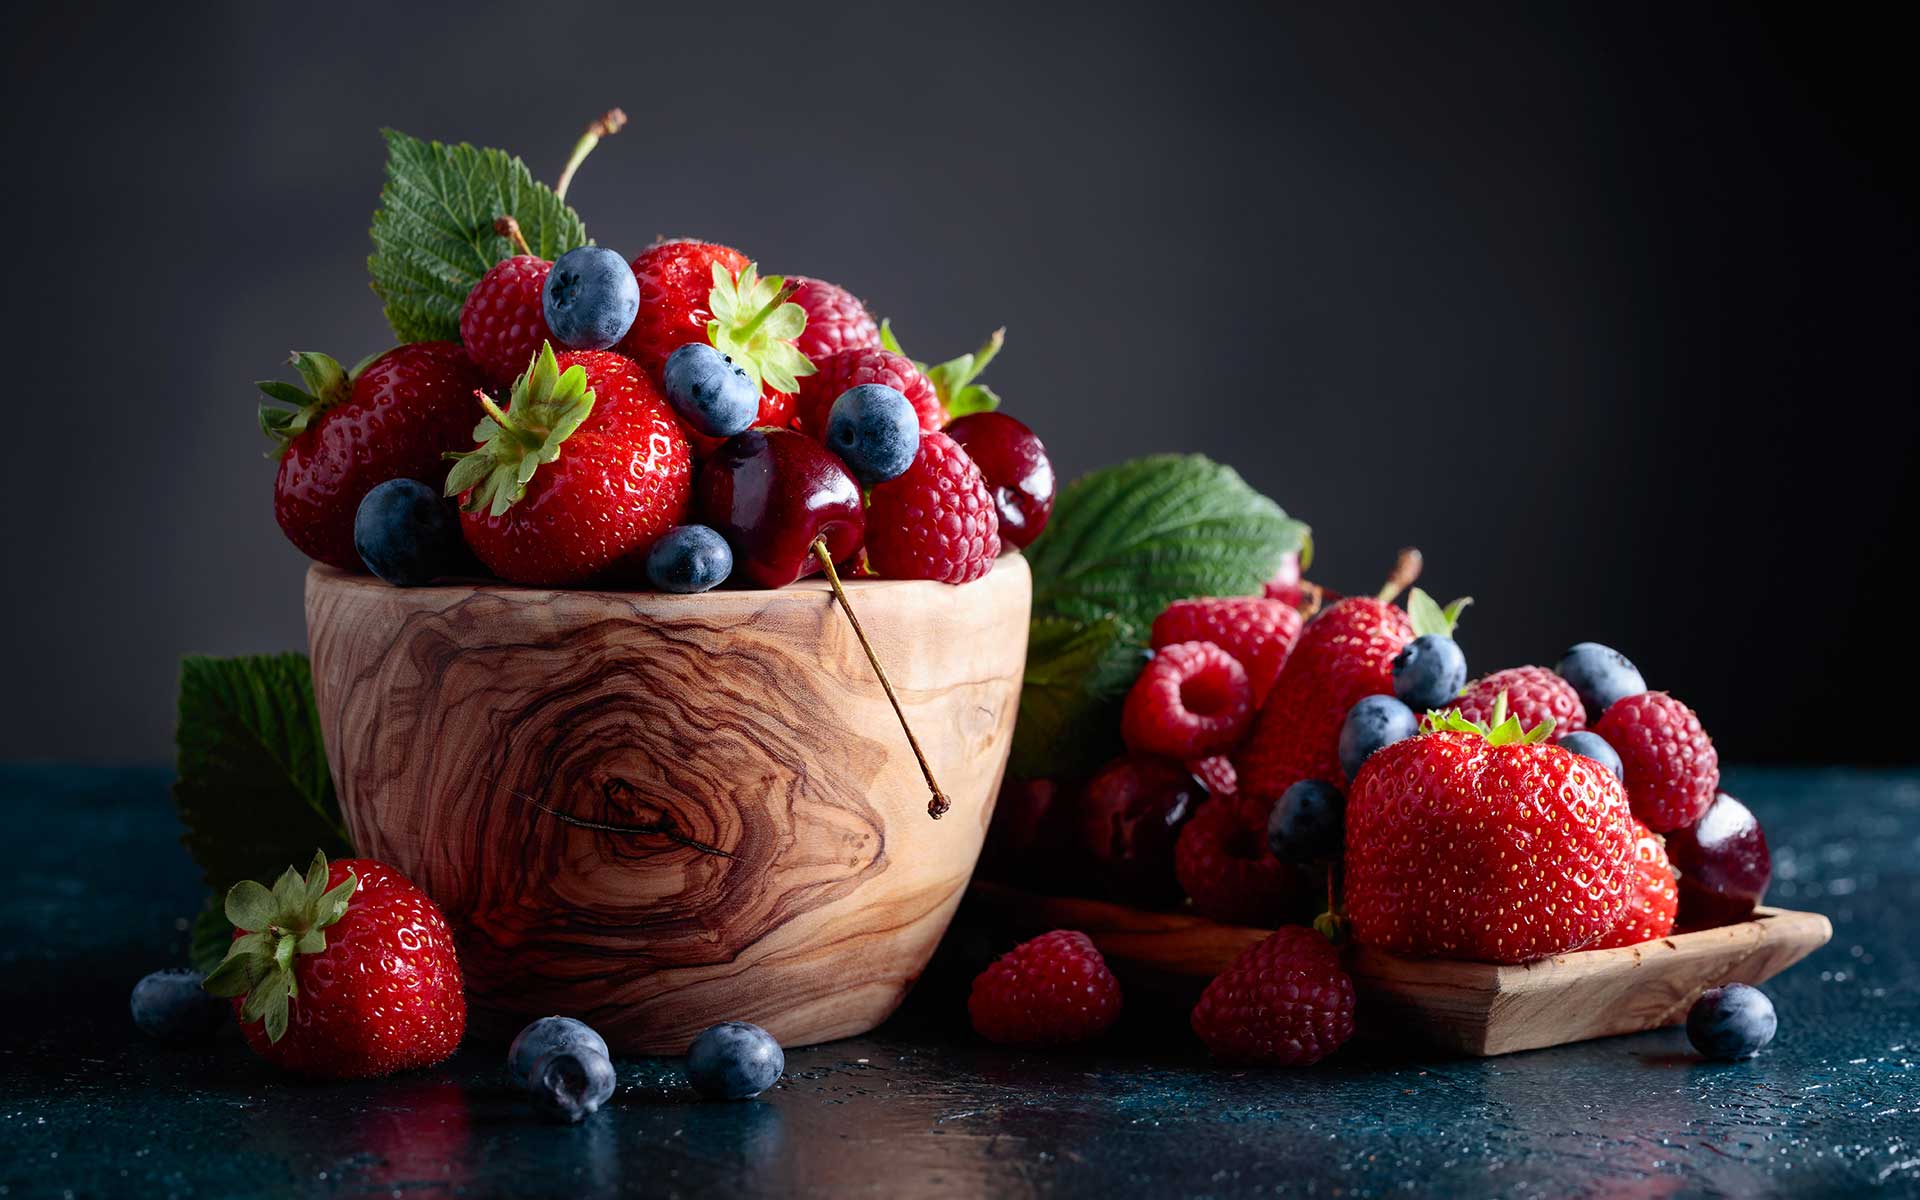 Health Benefits of Blackberries & Other Berries